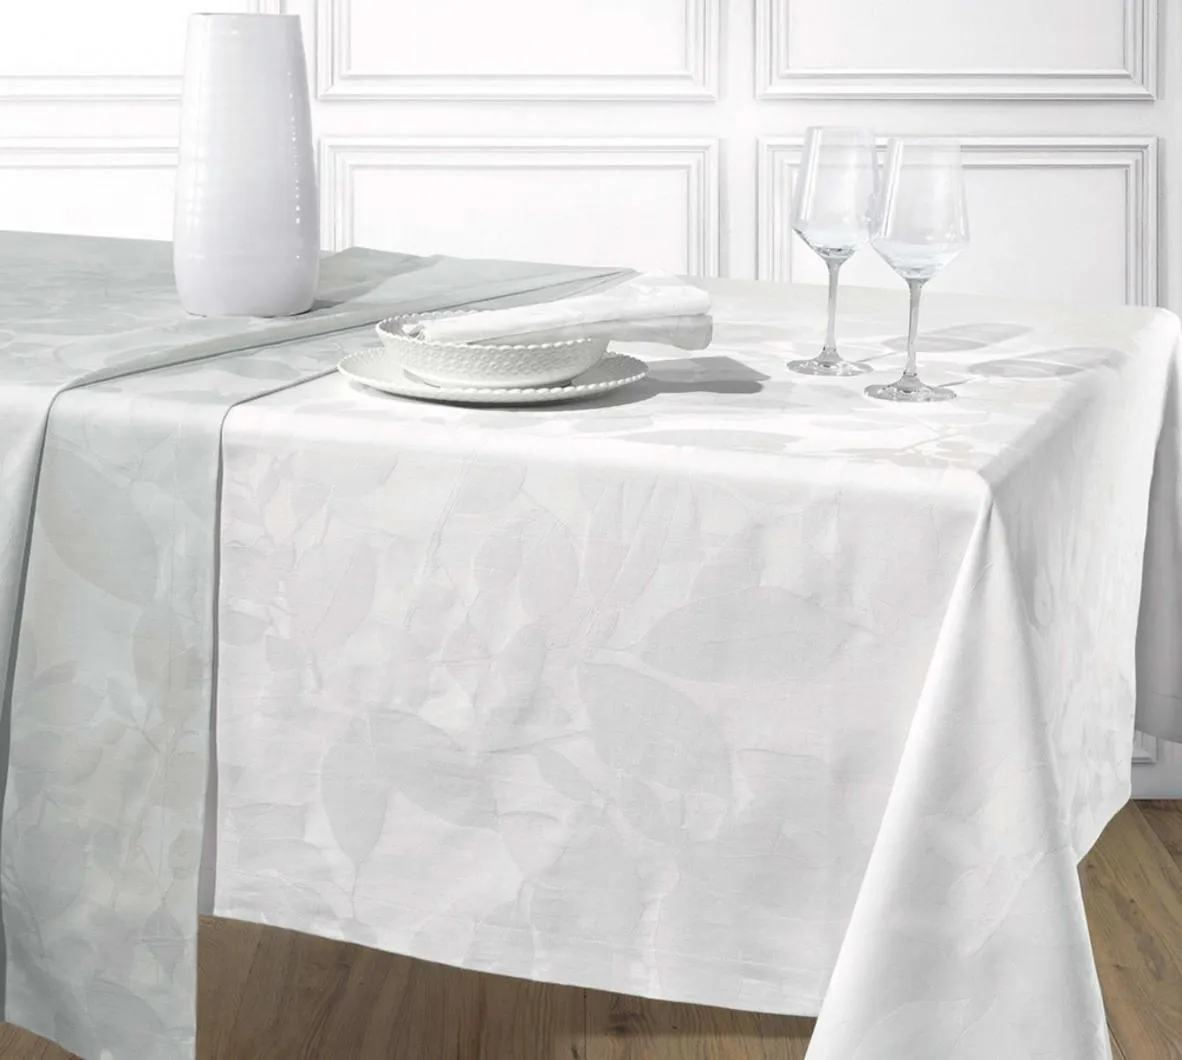 Aura table cloth set